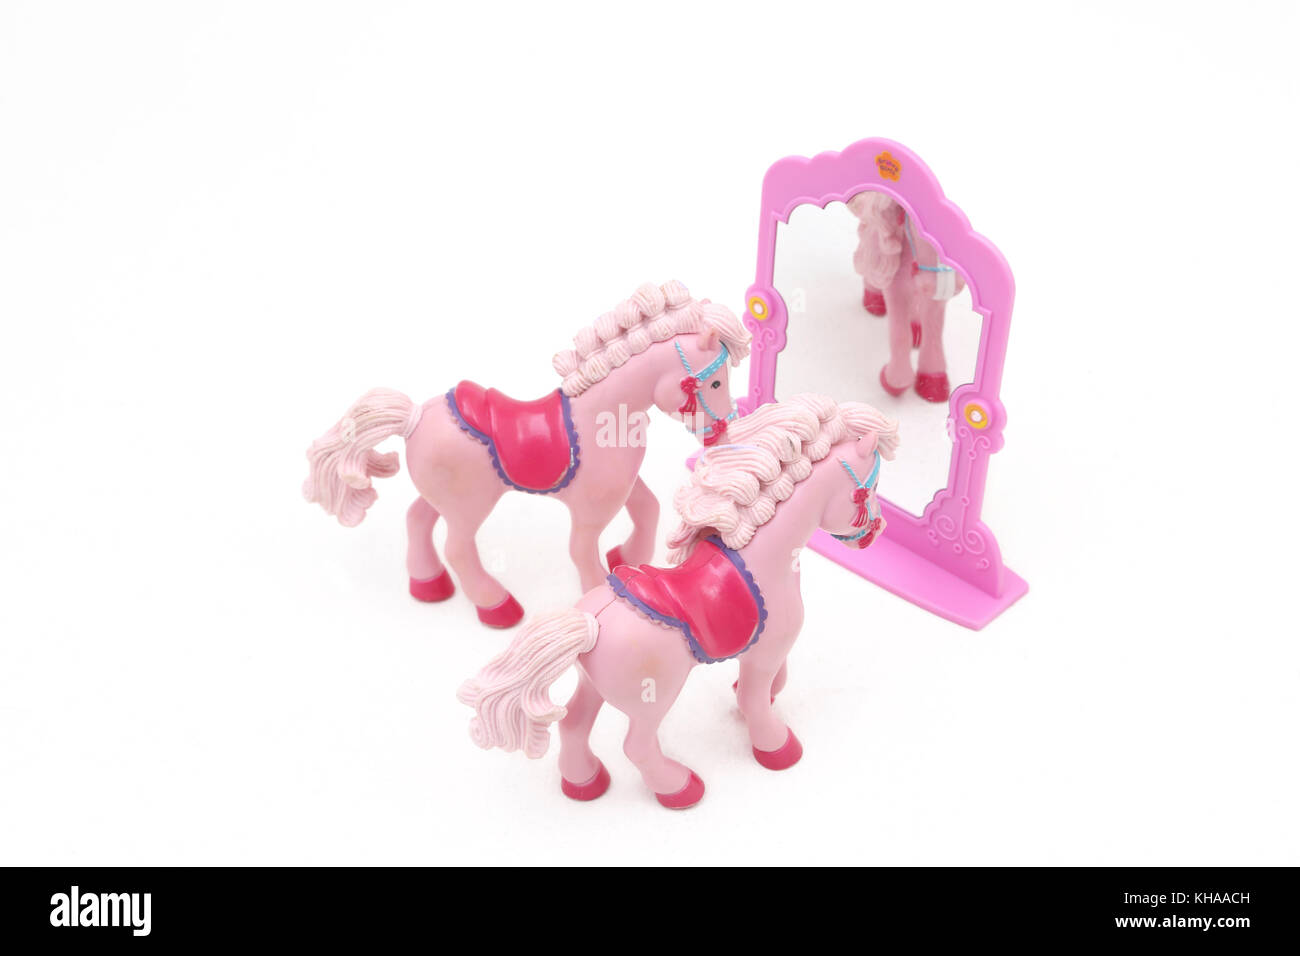 Spielzeug grooviger Mädchen Pferde und Spiegel Stockfoto